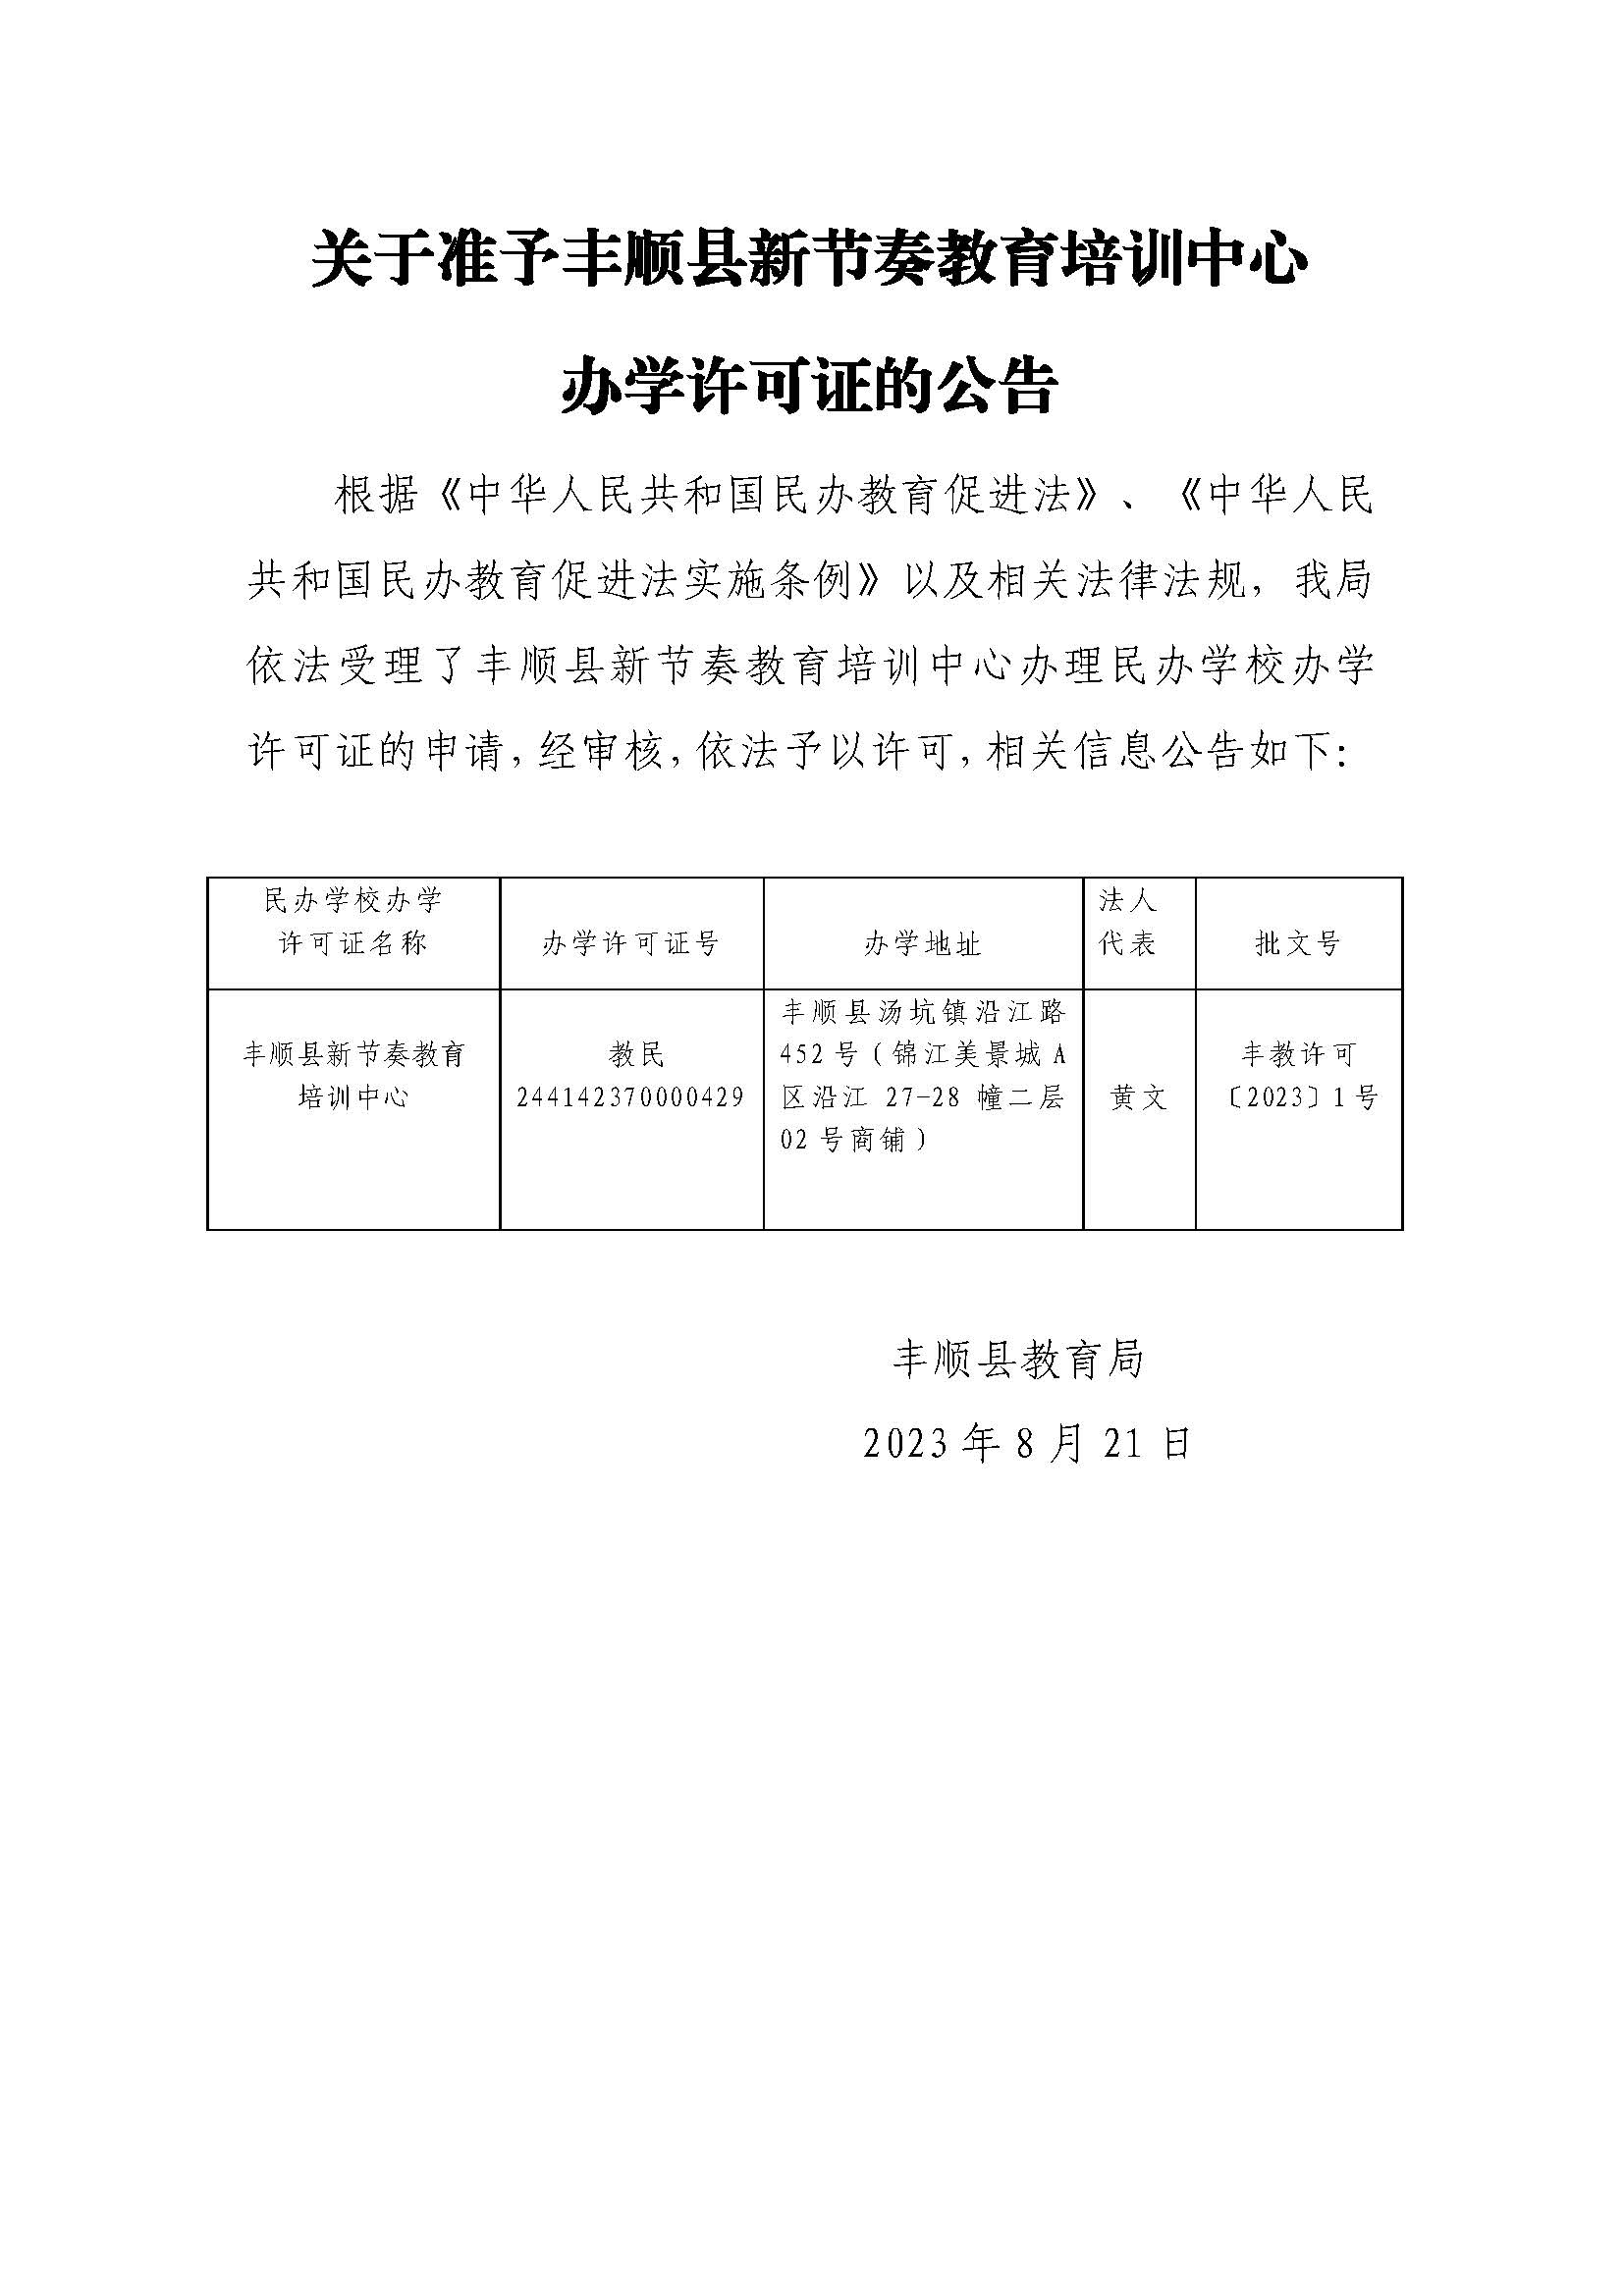 关于准予丰顺县新节奏教育培训中心办学许可证的公告.jpg